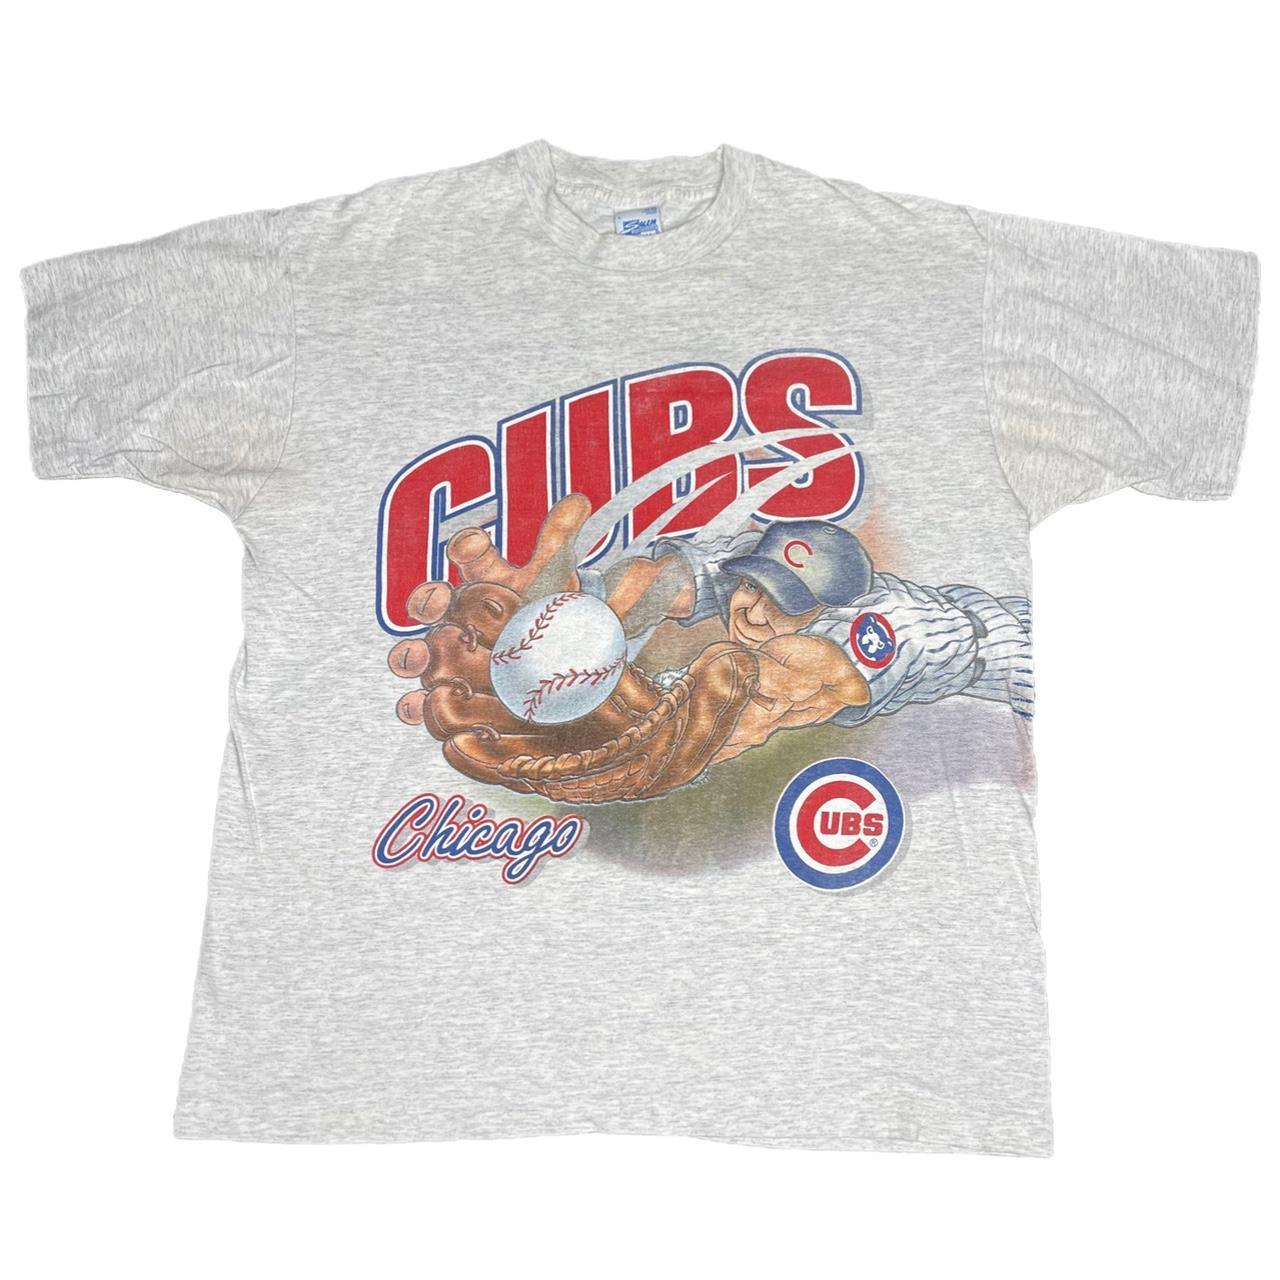 Vintage 90s Chicago Cubs t-shirt Salem brand MLB - Depop